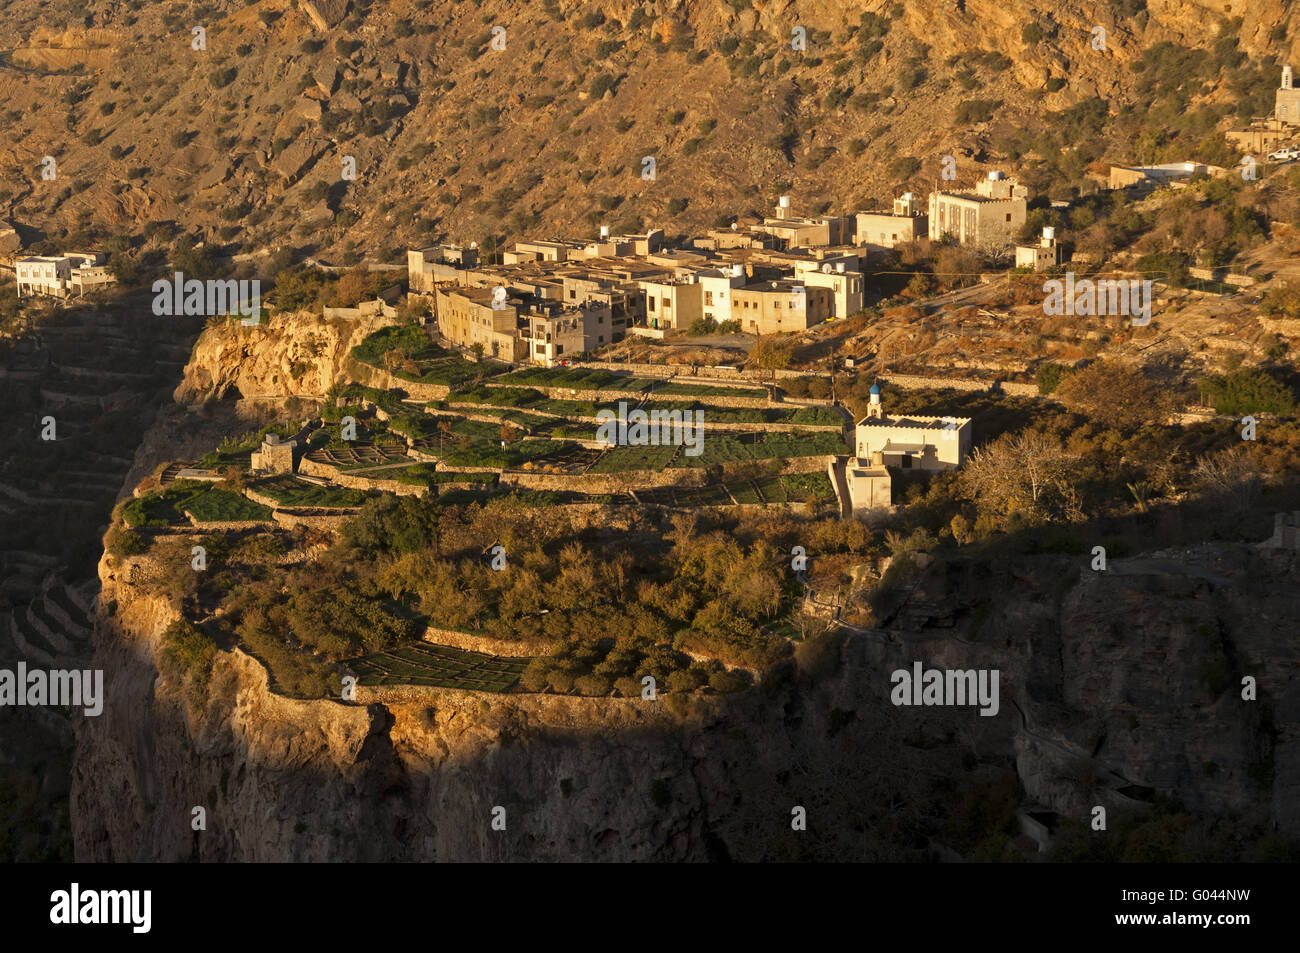 village of Ash Sharaijah and its terrace plots Stock Photo